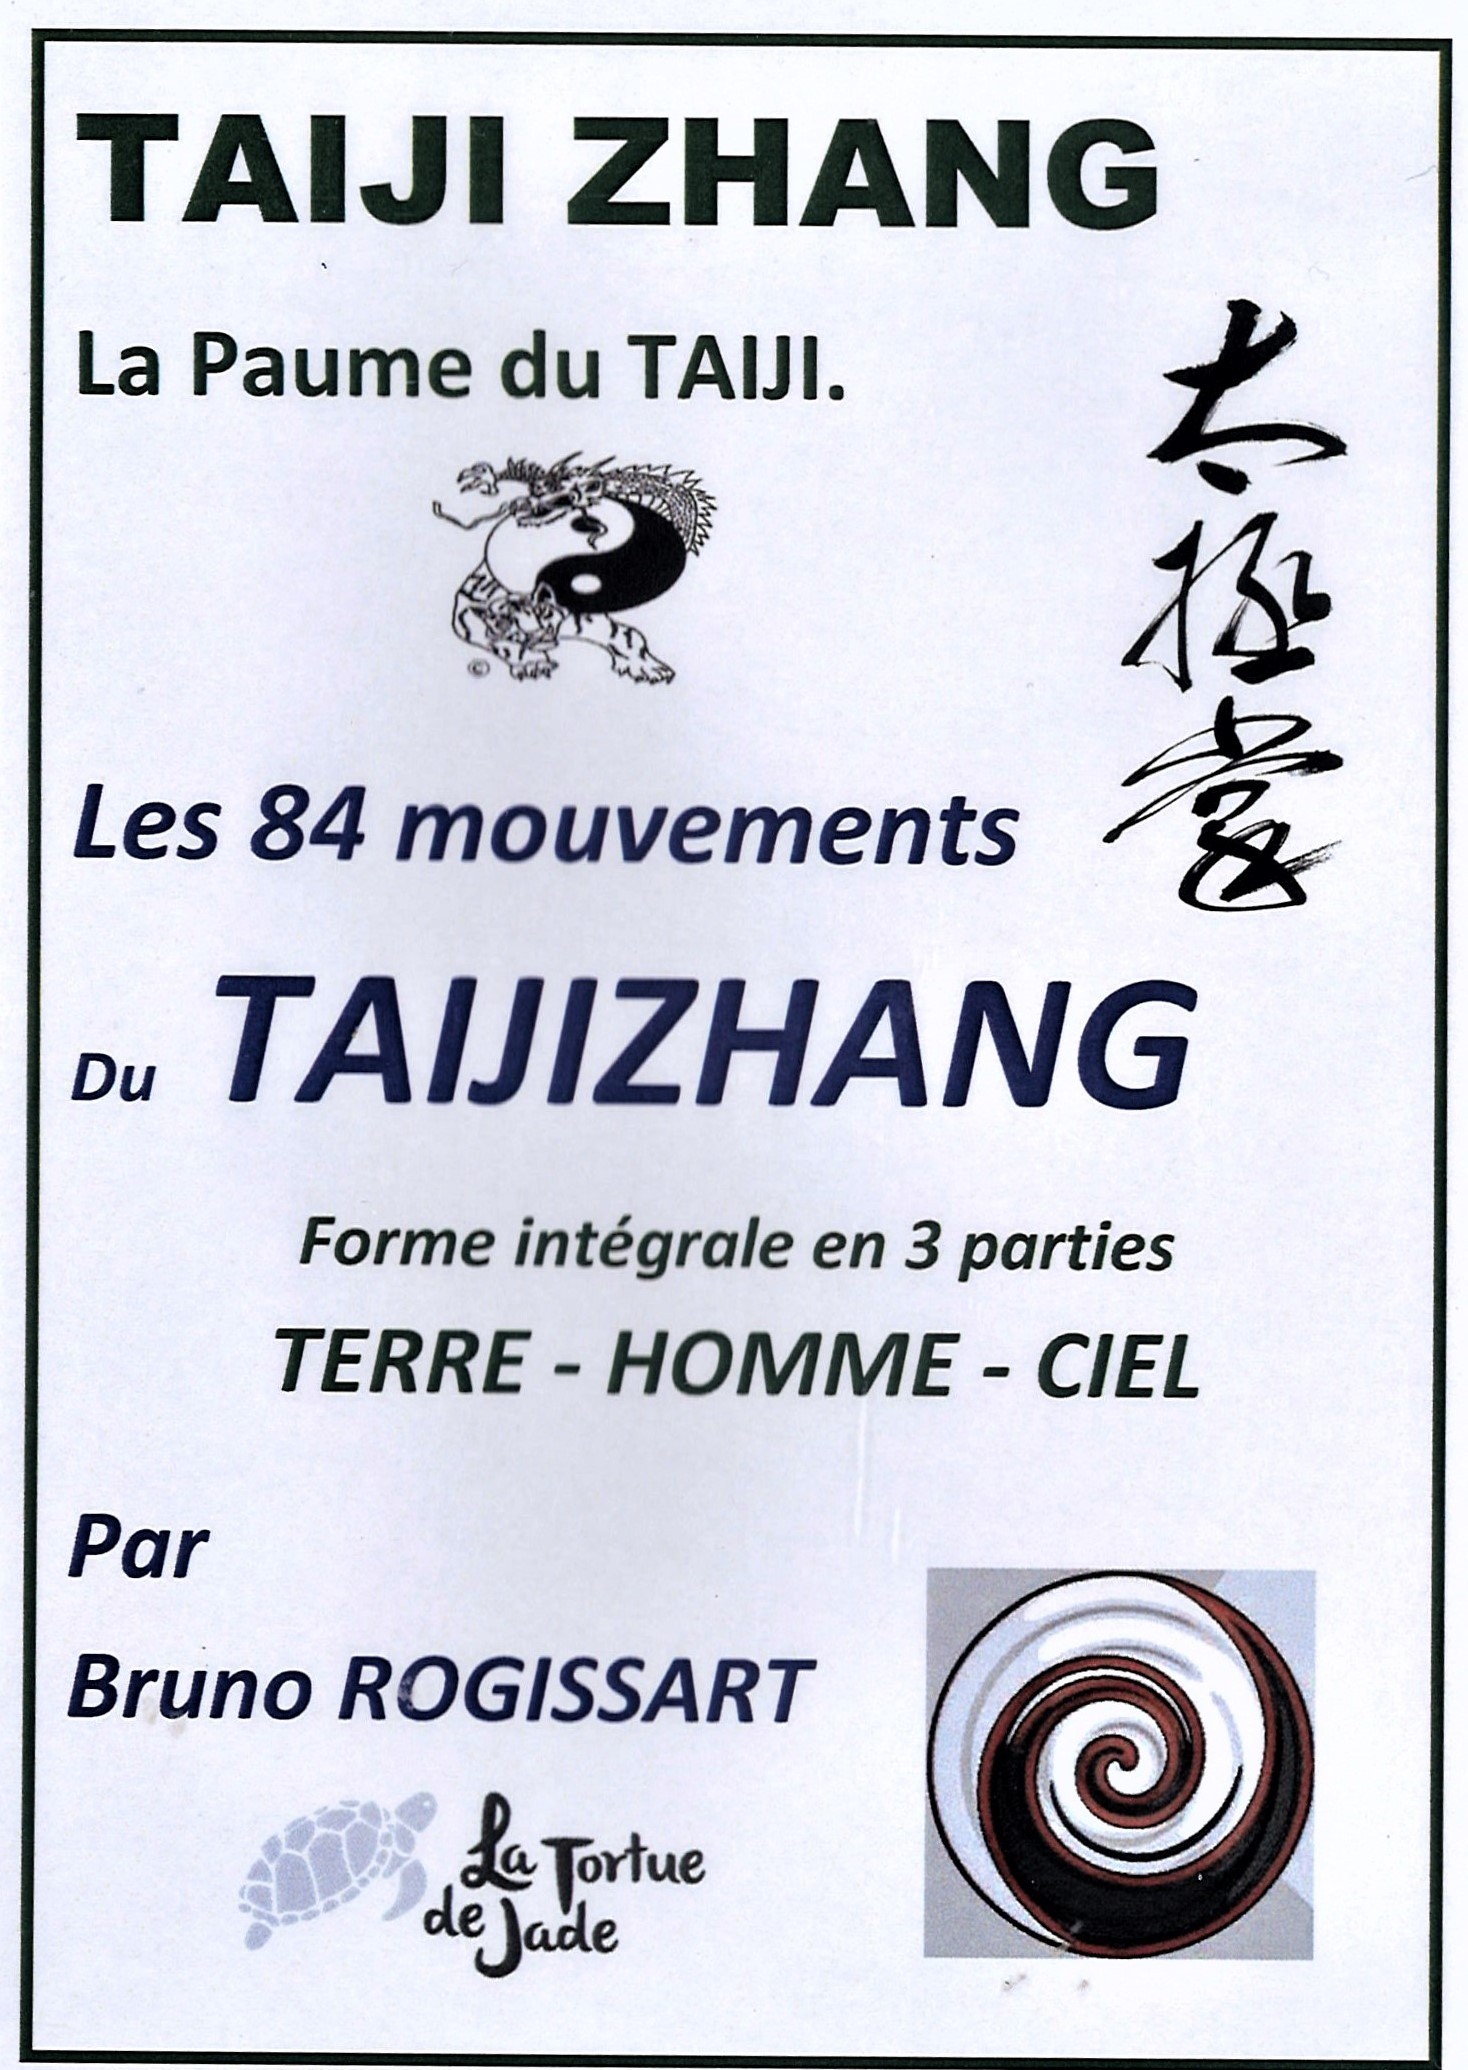 DVD d'apprentissage de la méthode du TAIJIZHANG 'la paume du TAIJI'